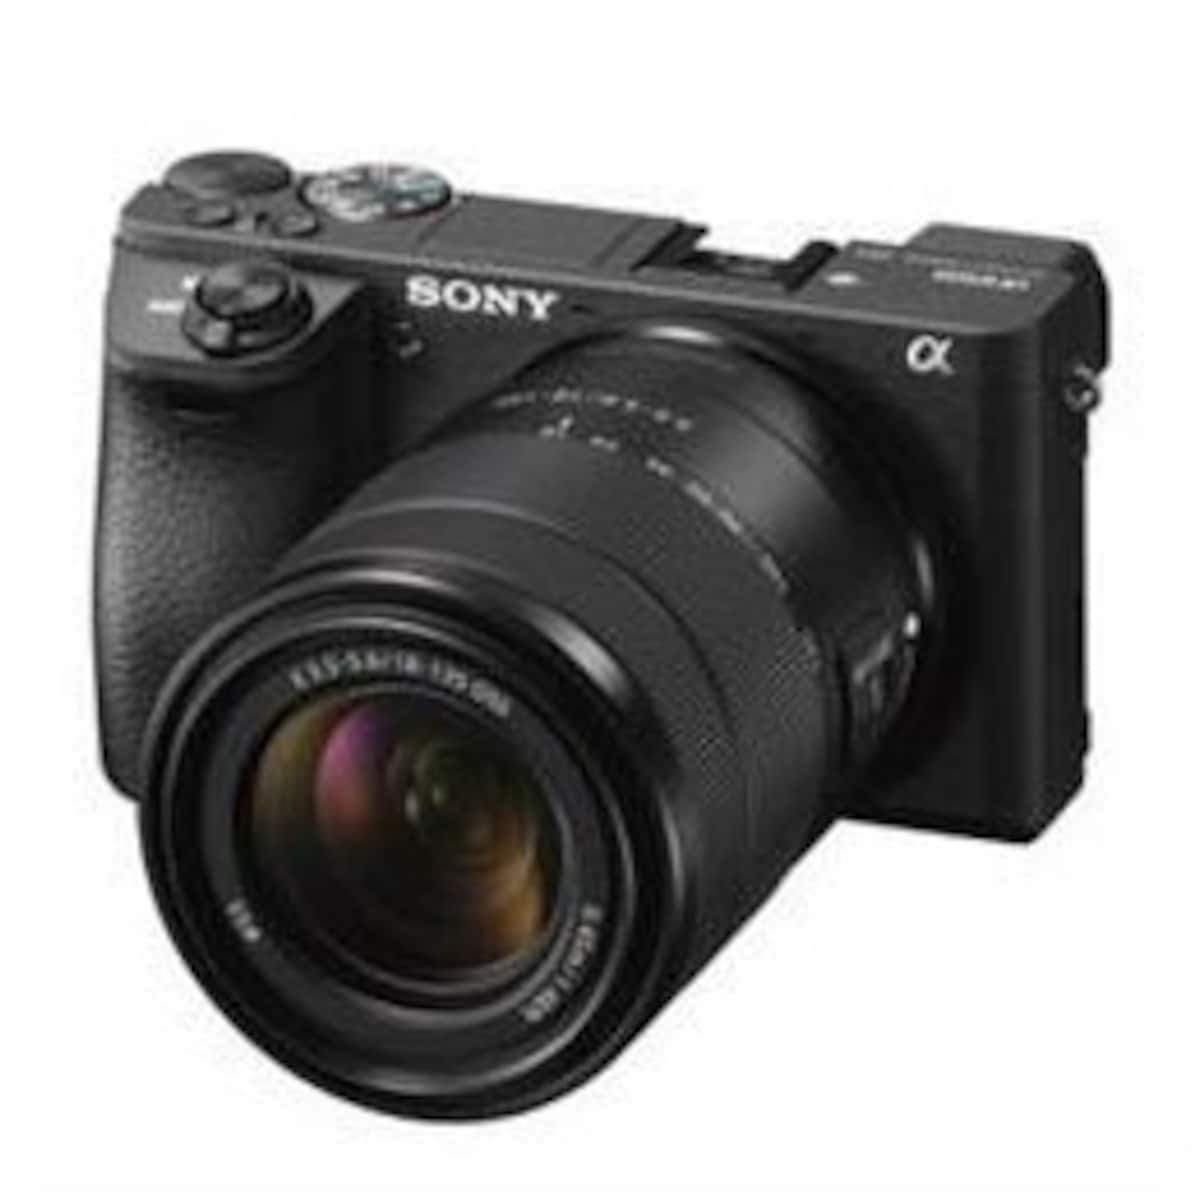 ソニー デジタル一眼カメラ「α6500」高倍率ズームレンズキット ILCE-6500M